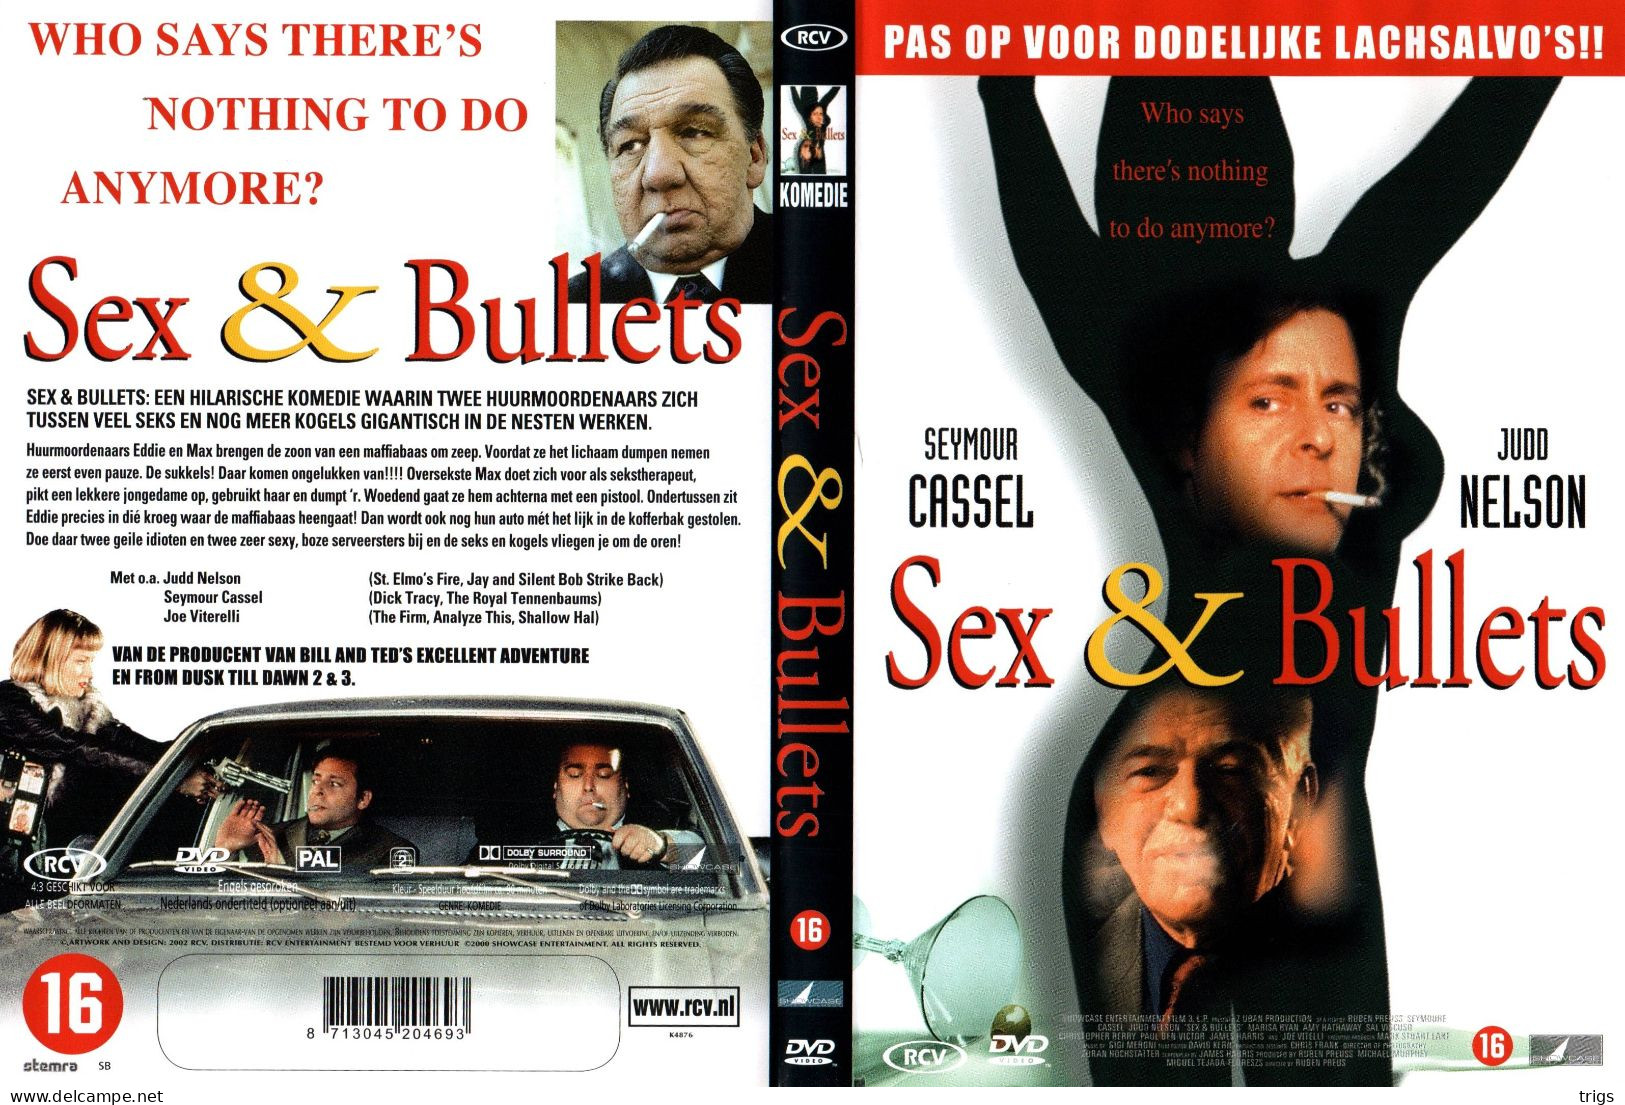 DVD - Sex & Bullets - Comédie